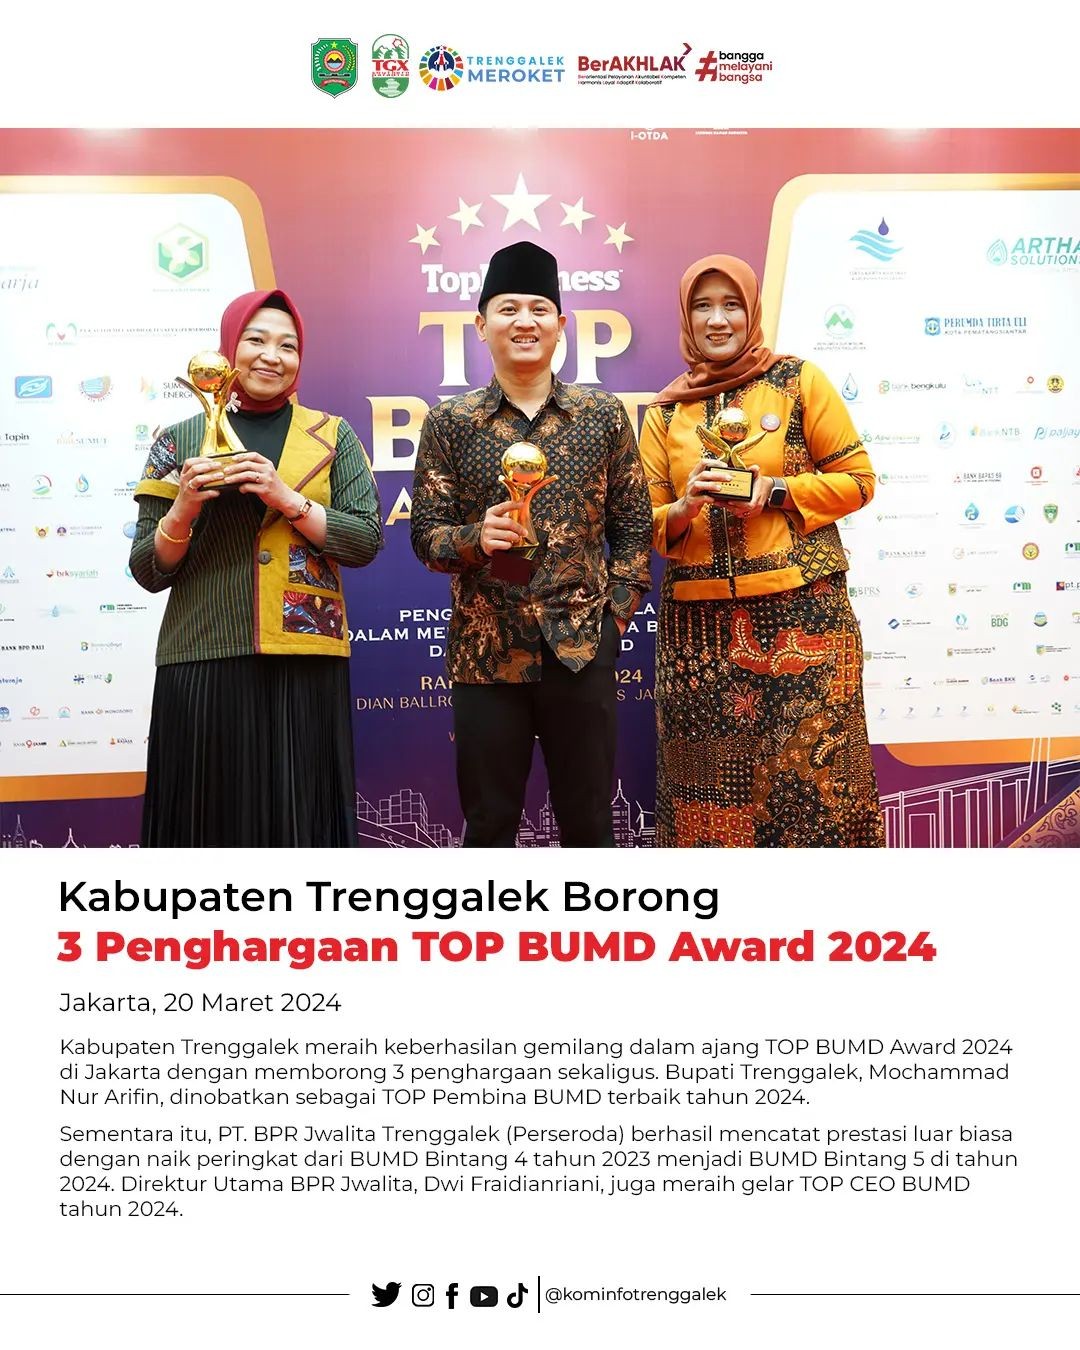 Kabupaten Trenggalek Meraih 3 Penghargaan TOP BUMD Award 2024